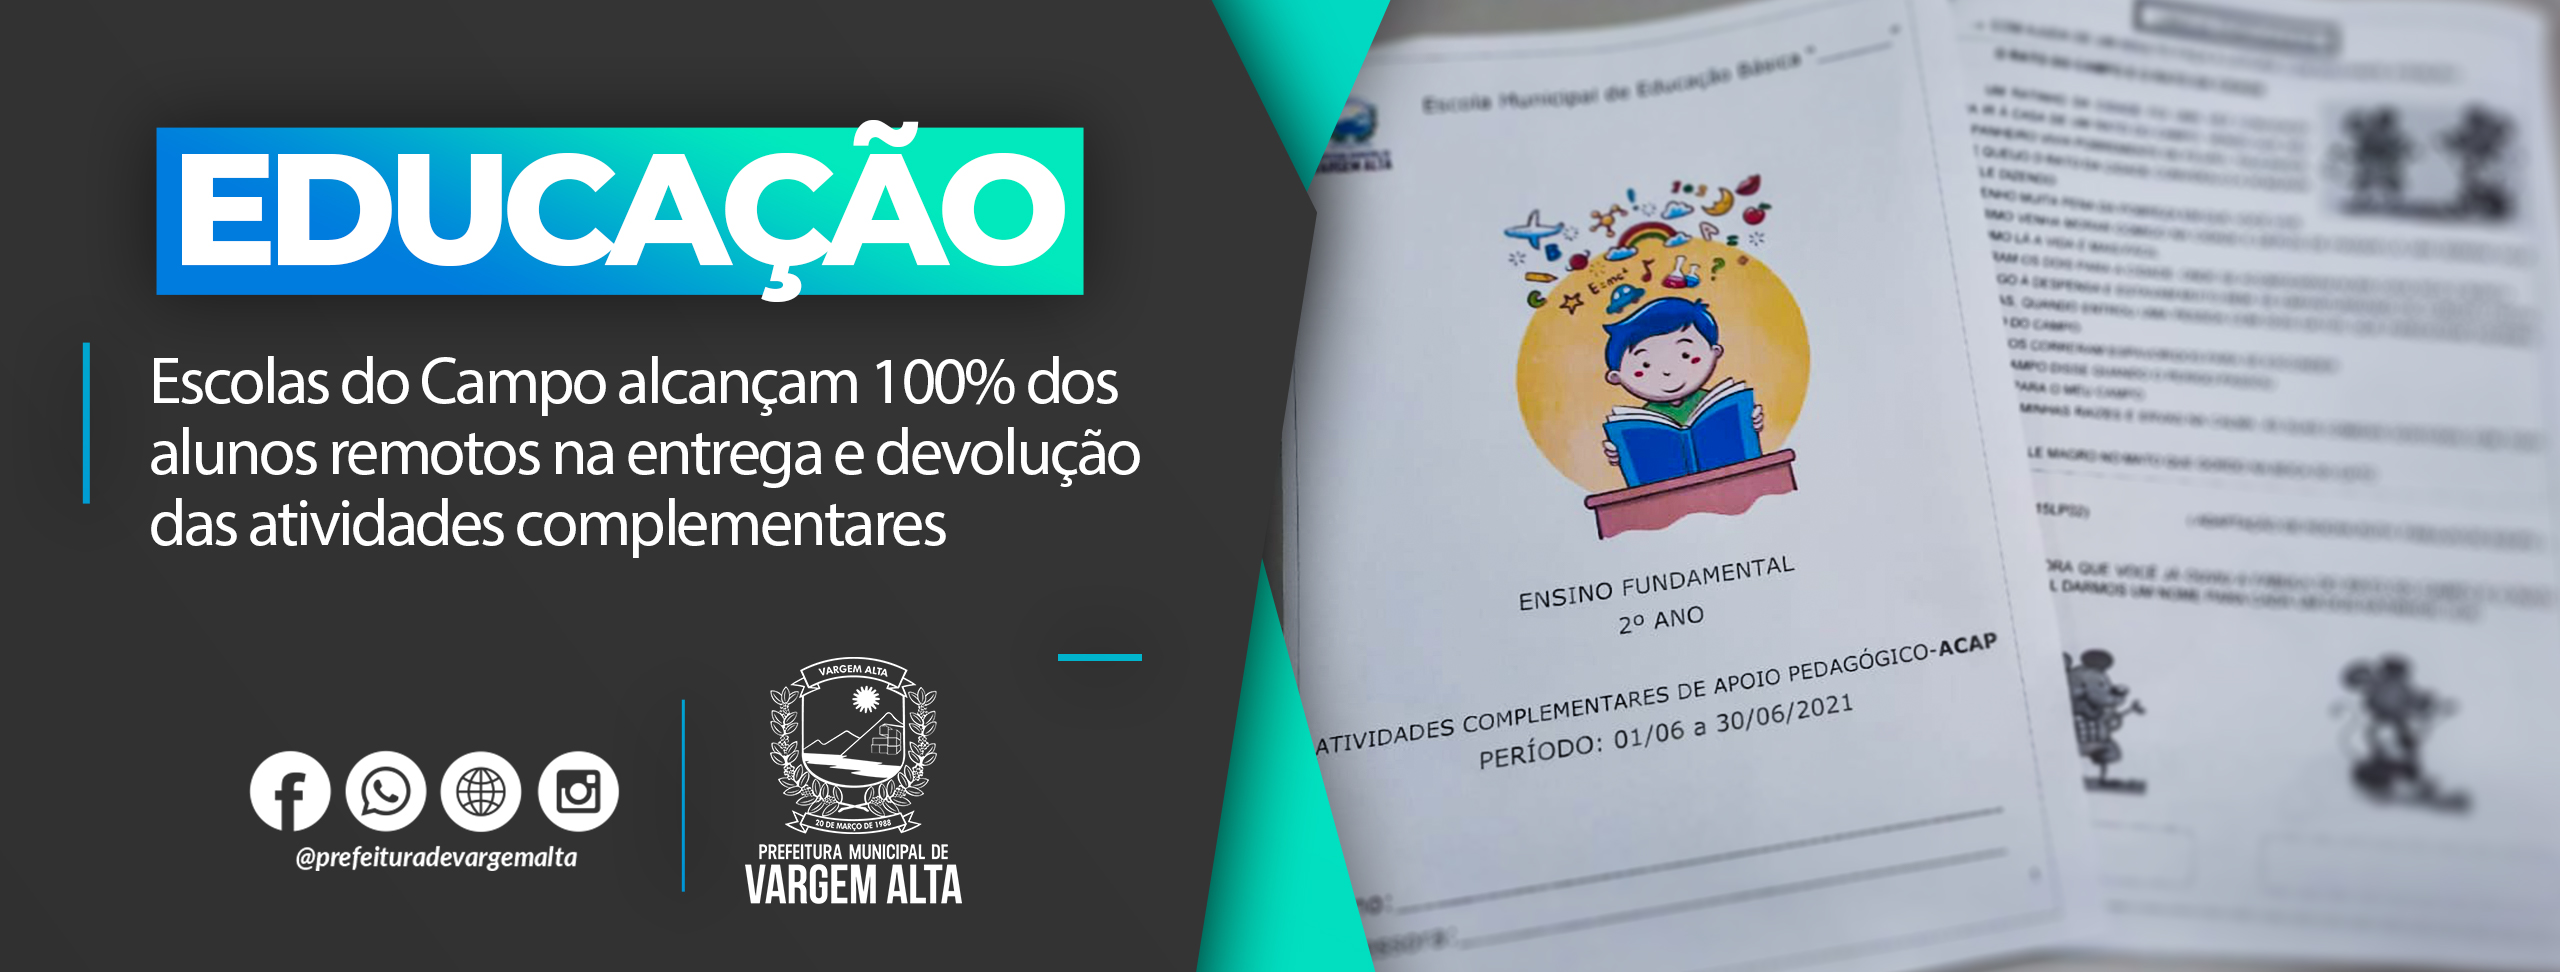 Escolas do Campo de Vargem Alta alcançam 100% dos alunos remotos na entrega e devolução das atividades complementares